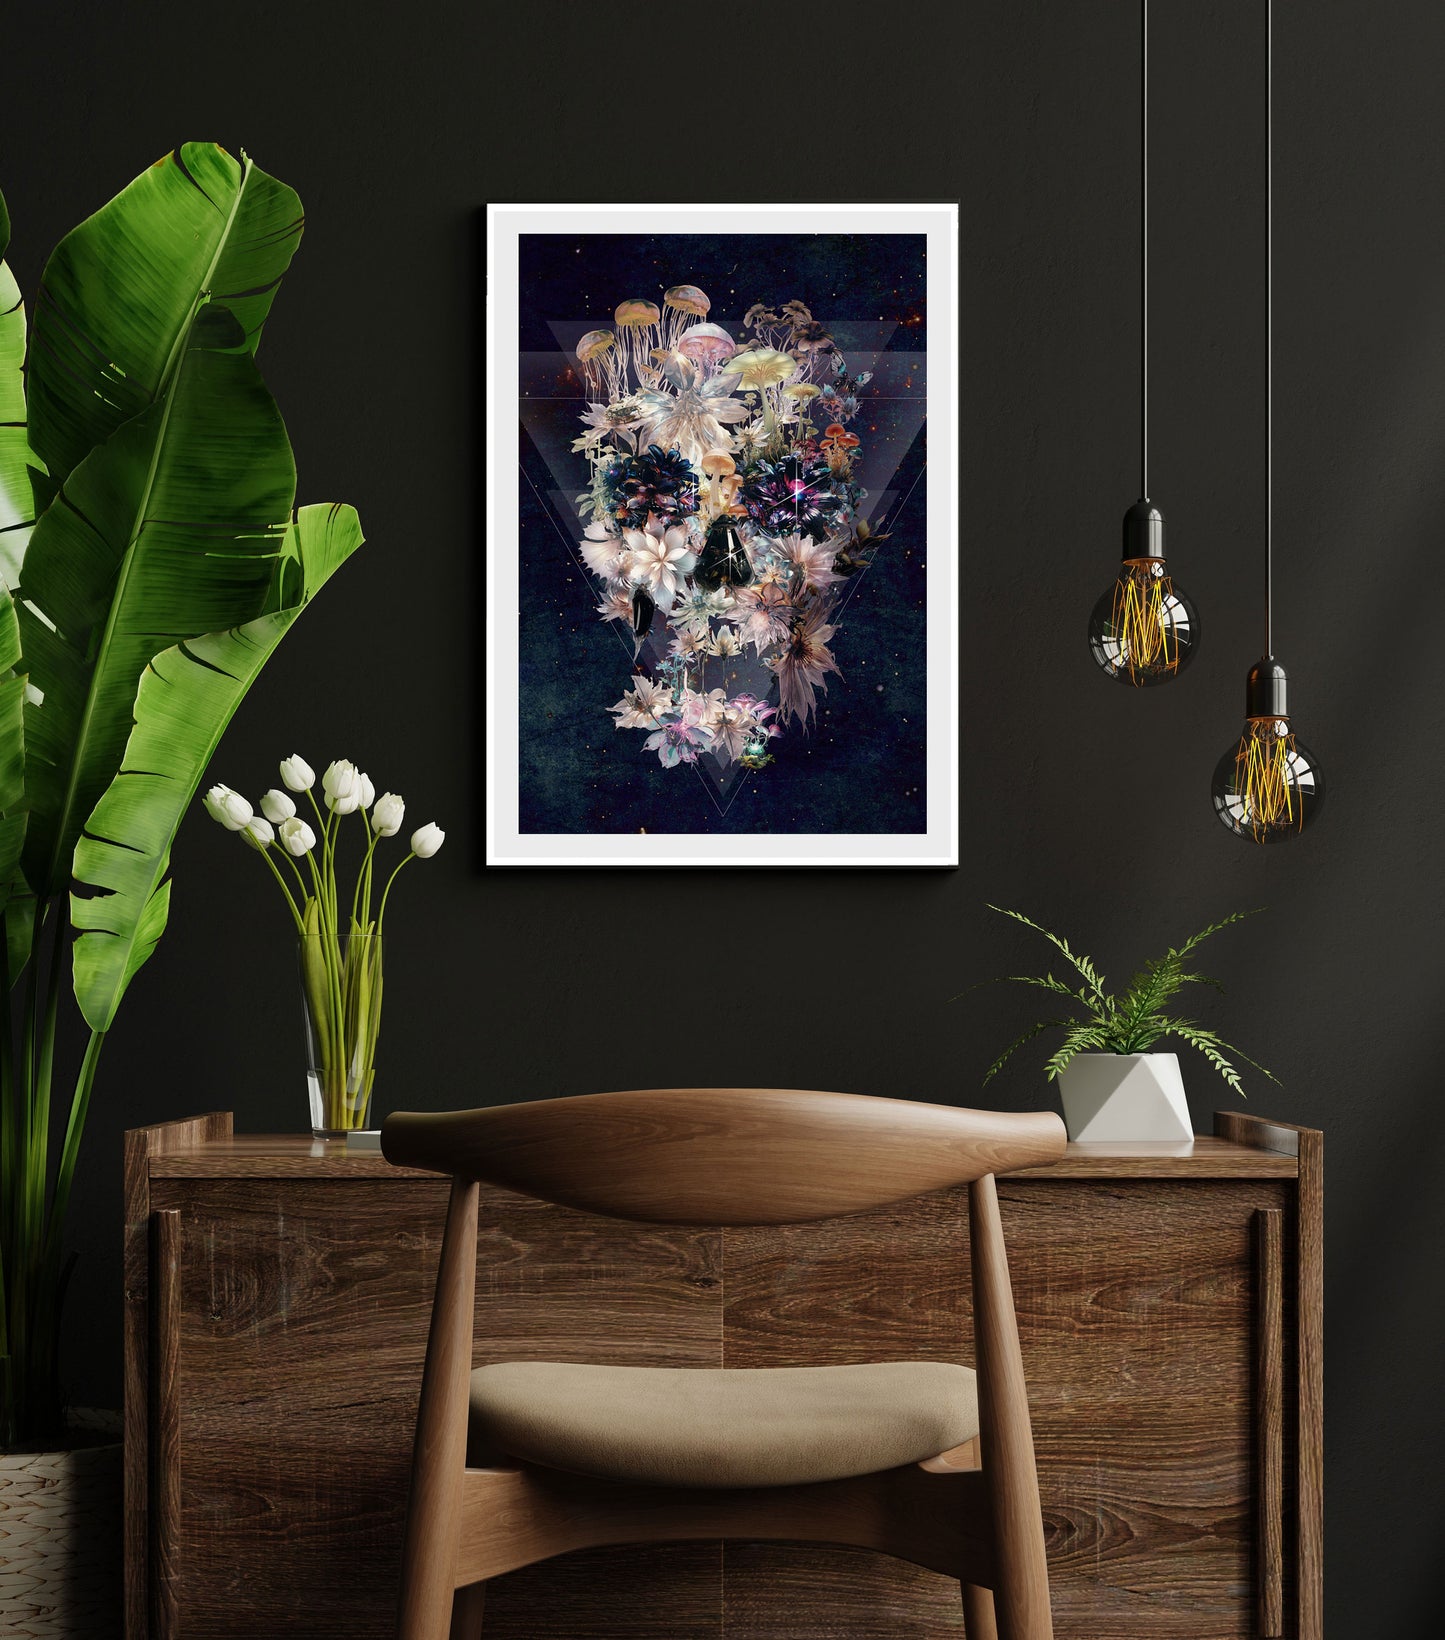 Dark Skull Poster, Sugar Skull Art Print, Floral Skull Wall Art, Skull Gift, Skull Illusion Home Decor, Illustration by Ali Gulec